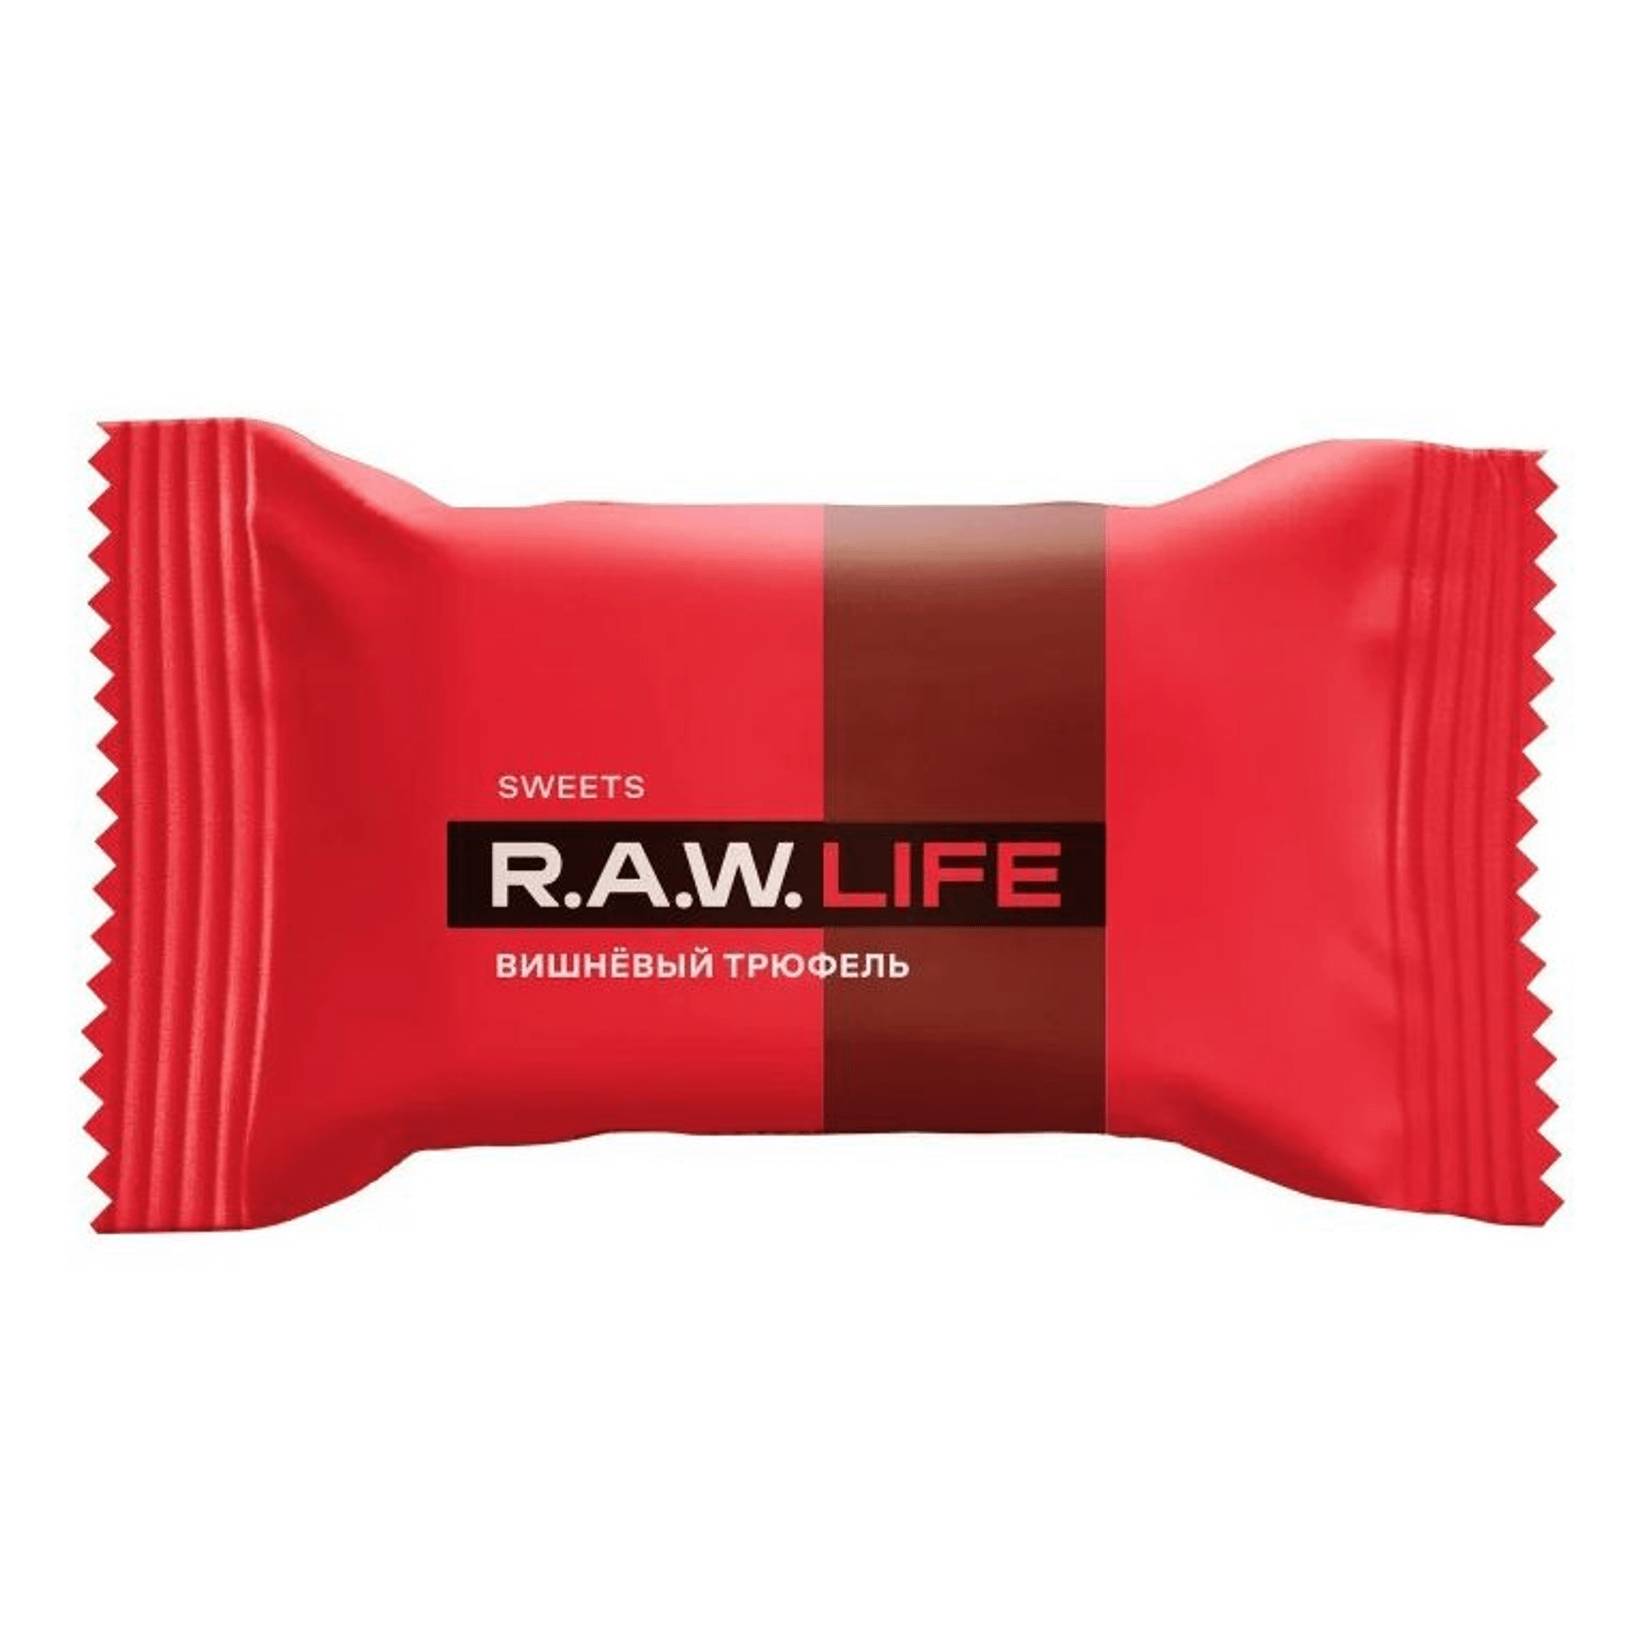 Конфета R.A.W. LIFE Вишневый трюфель, 18 г конфета шоколадно фруктовая r a w life трюфель с солью 18 г